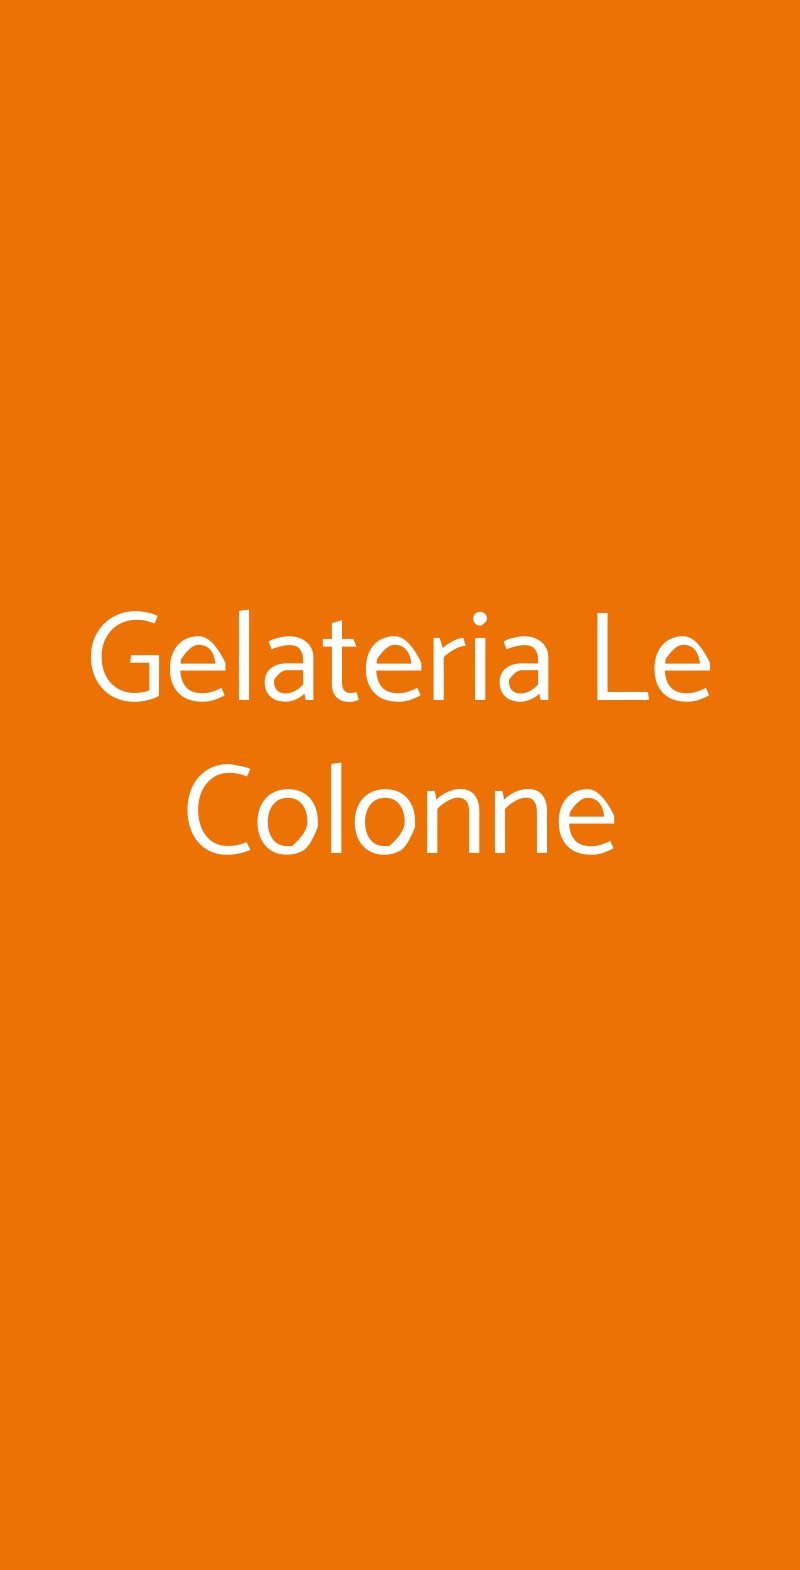 Gelateria Le Colonne Milano menù 1 pagina